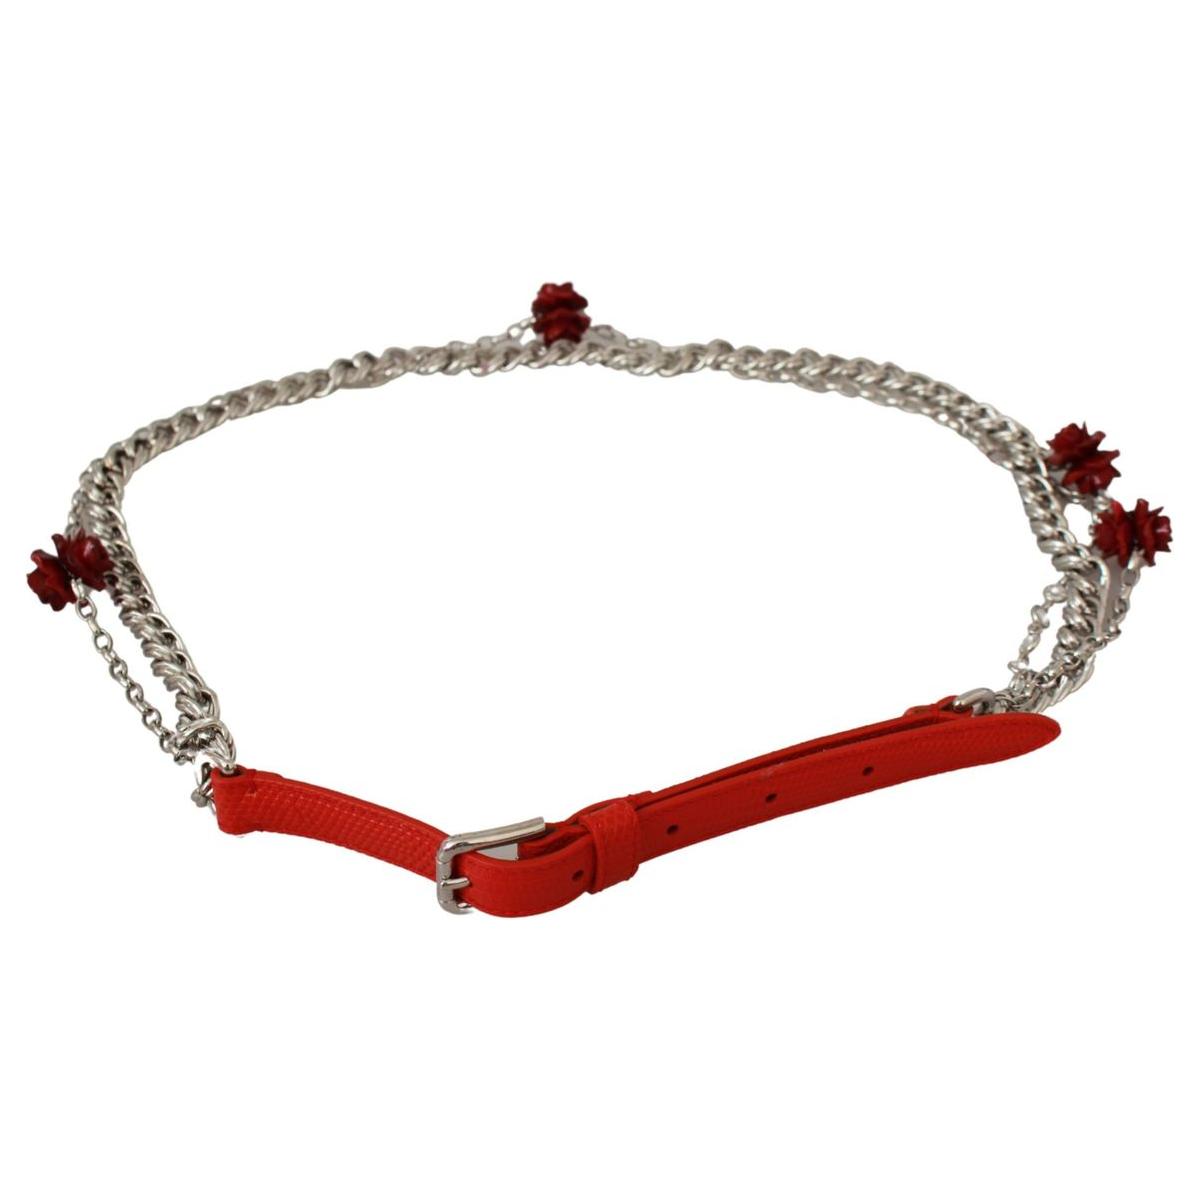 Dolce & Gabbana Elegant Floral Rose Waist Belt in Vibrant Red Belt red-leather-roses-floral-silver-waist-belt IMG_1566-scaled-c2409cf2-73f_bf5d0434-a1c6-4e7c-83e7-757dea97b6c5.jpg